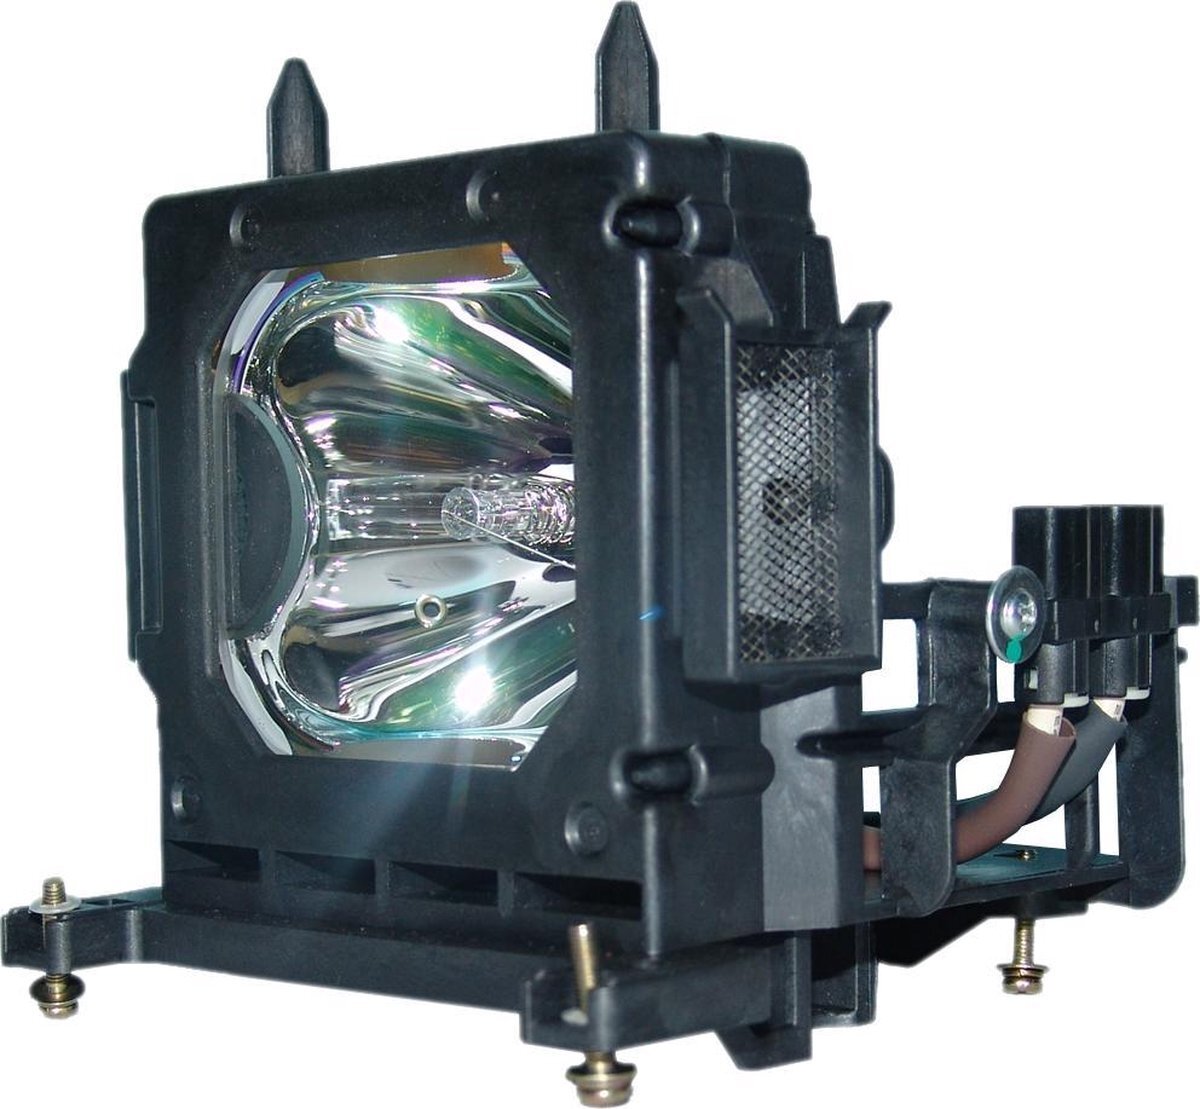 QualityLamp SONY VPL-VW95ES beamerlamp LMP-H202, bevat originele UHP lamp. Prestaties gelijk aan origineel.